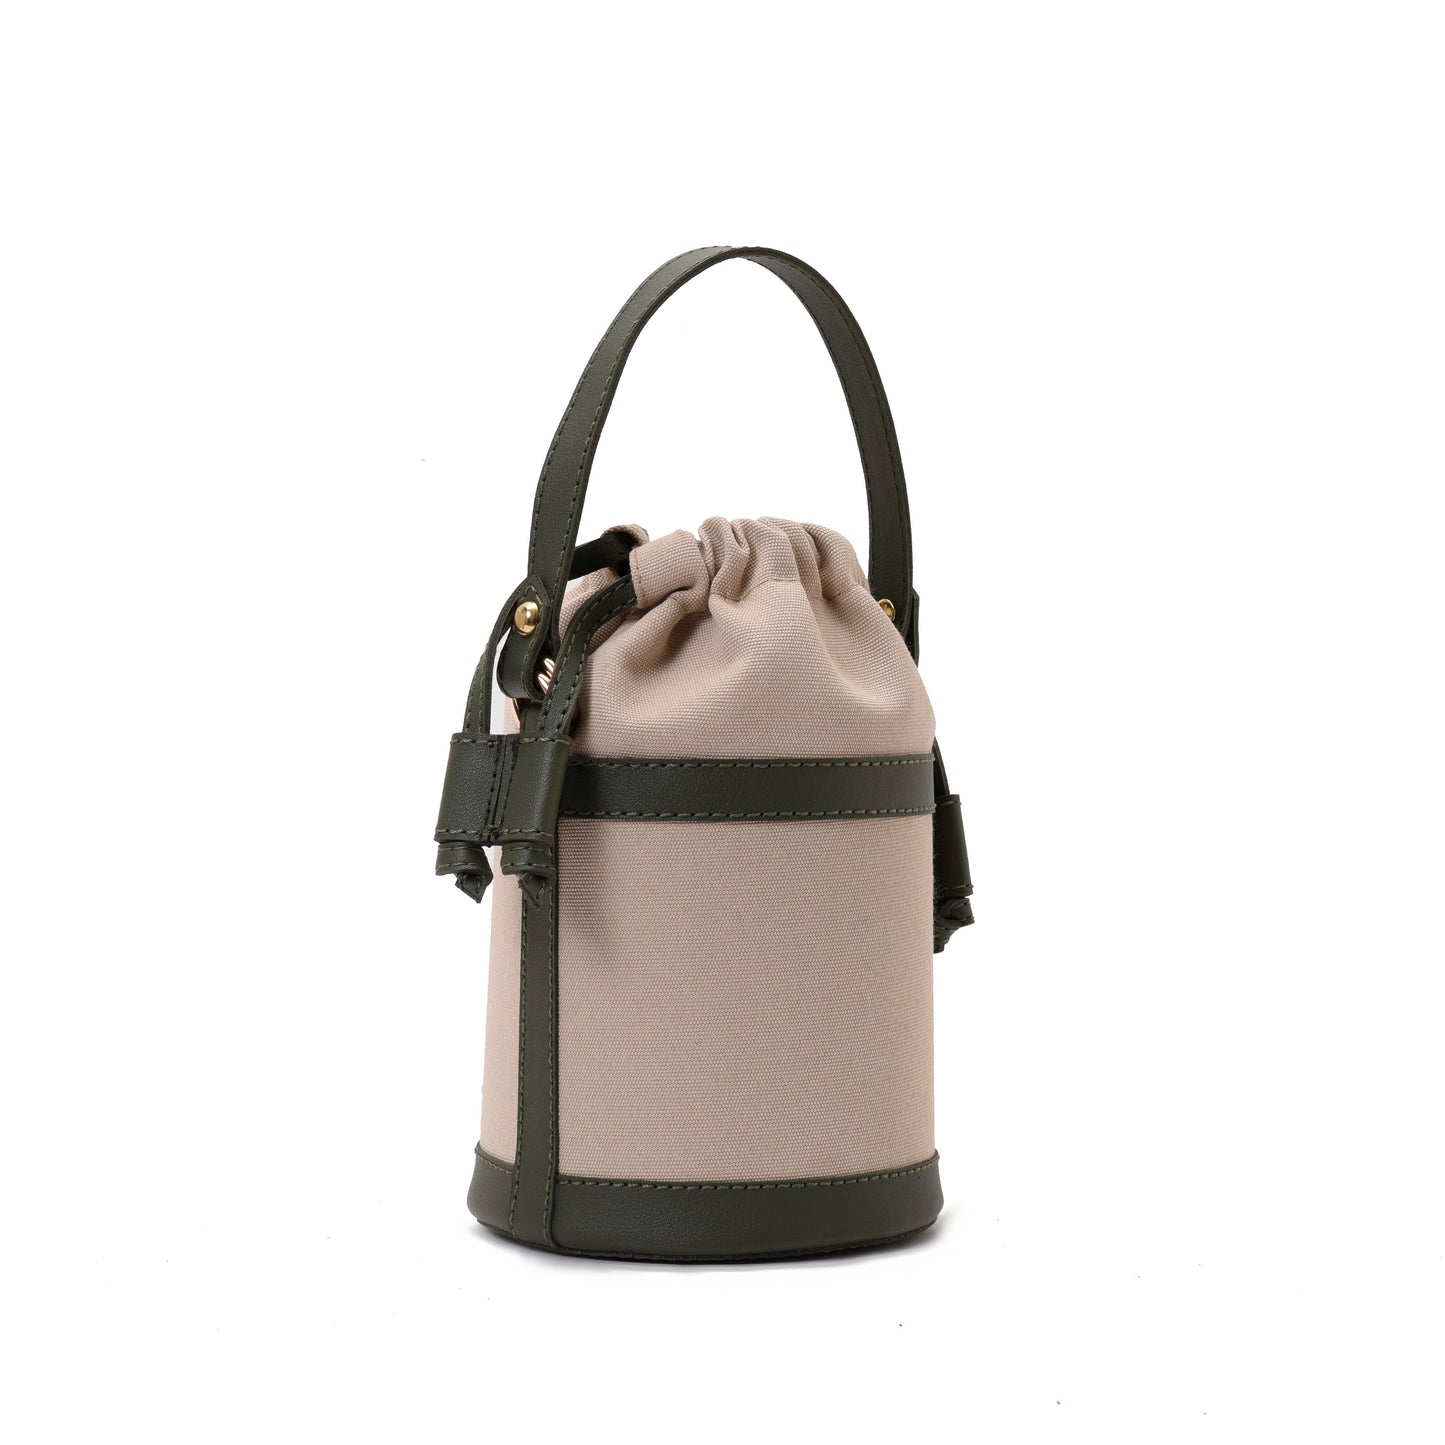 Retro bucket Beige Handbag with Green belt -Code 911